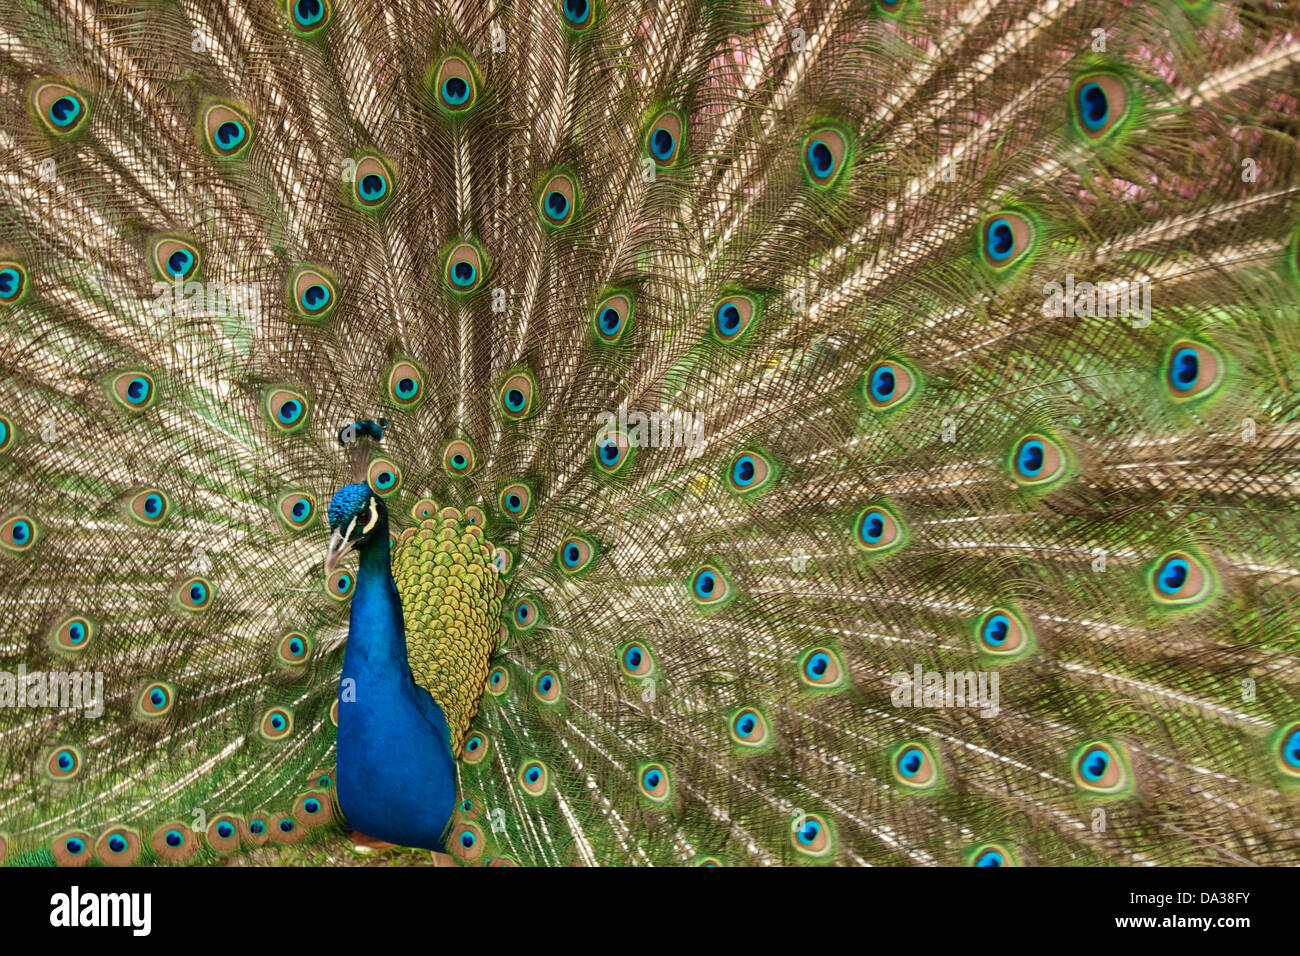 Peacock spreading its beauty Stock Photo